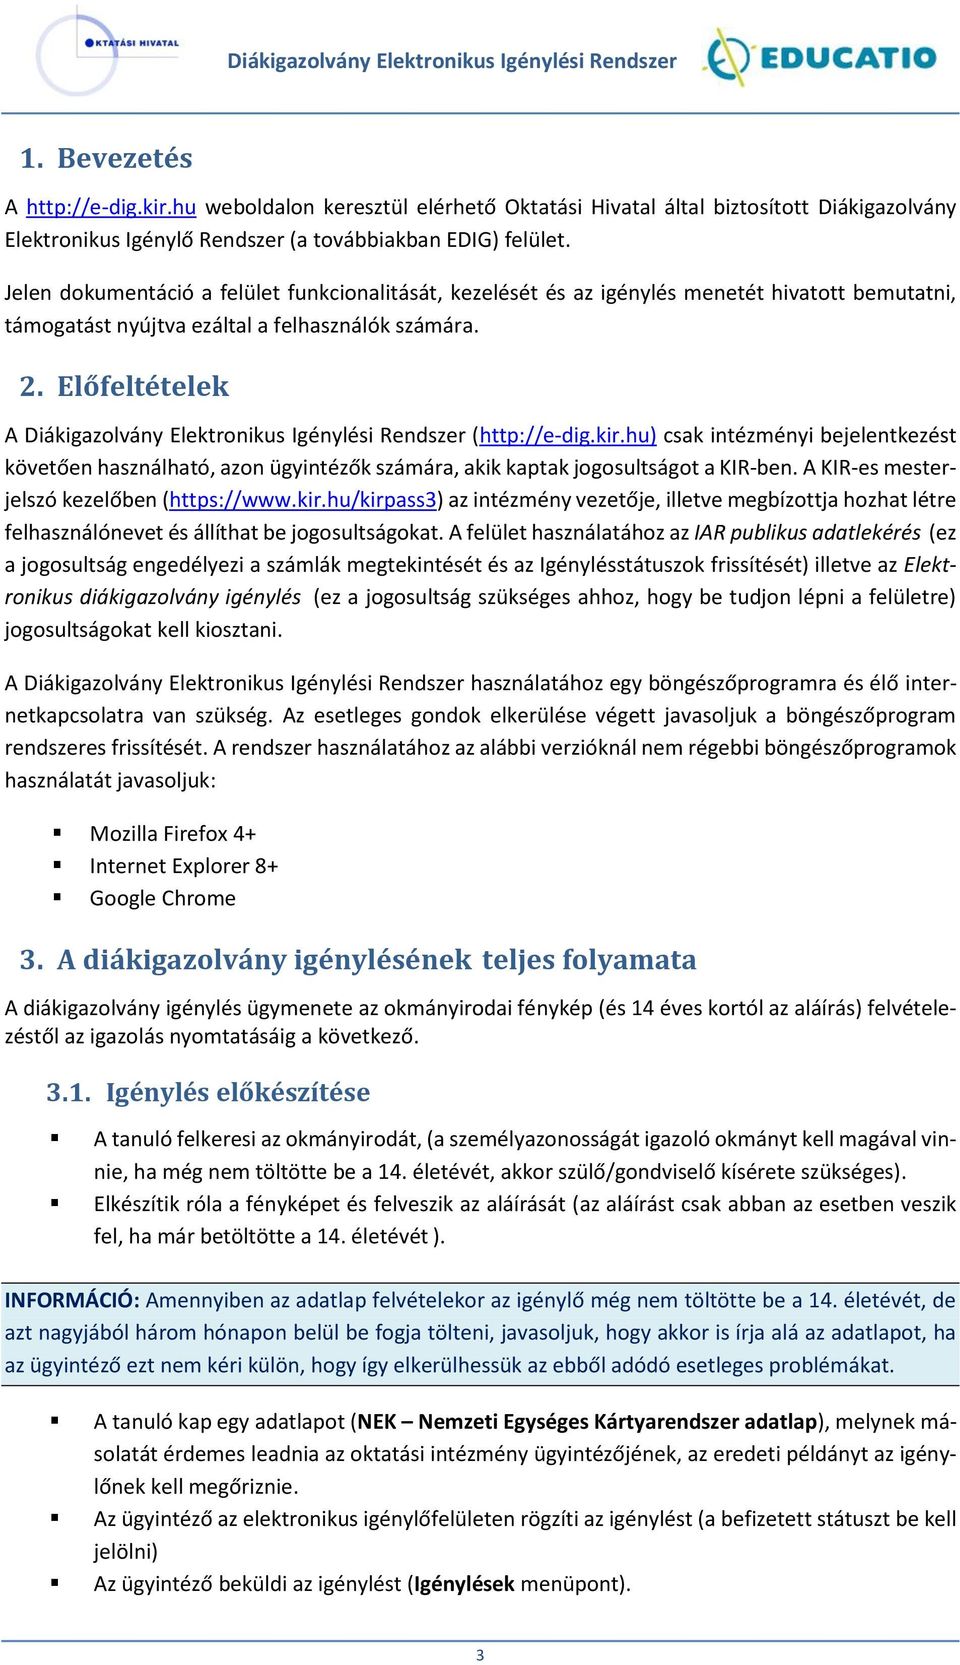 Előfeltételek A Diákigazolvány Elektronikus Igénylési Rendszer (http://e-dig.kir.hu) csak intézményi bejelentkezést követően használható, azon ügyintézők számára, akik kaptak jogosultságot a KIR-ben.